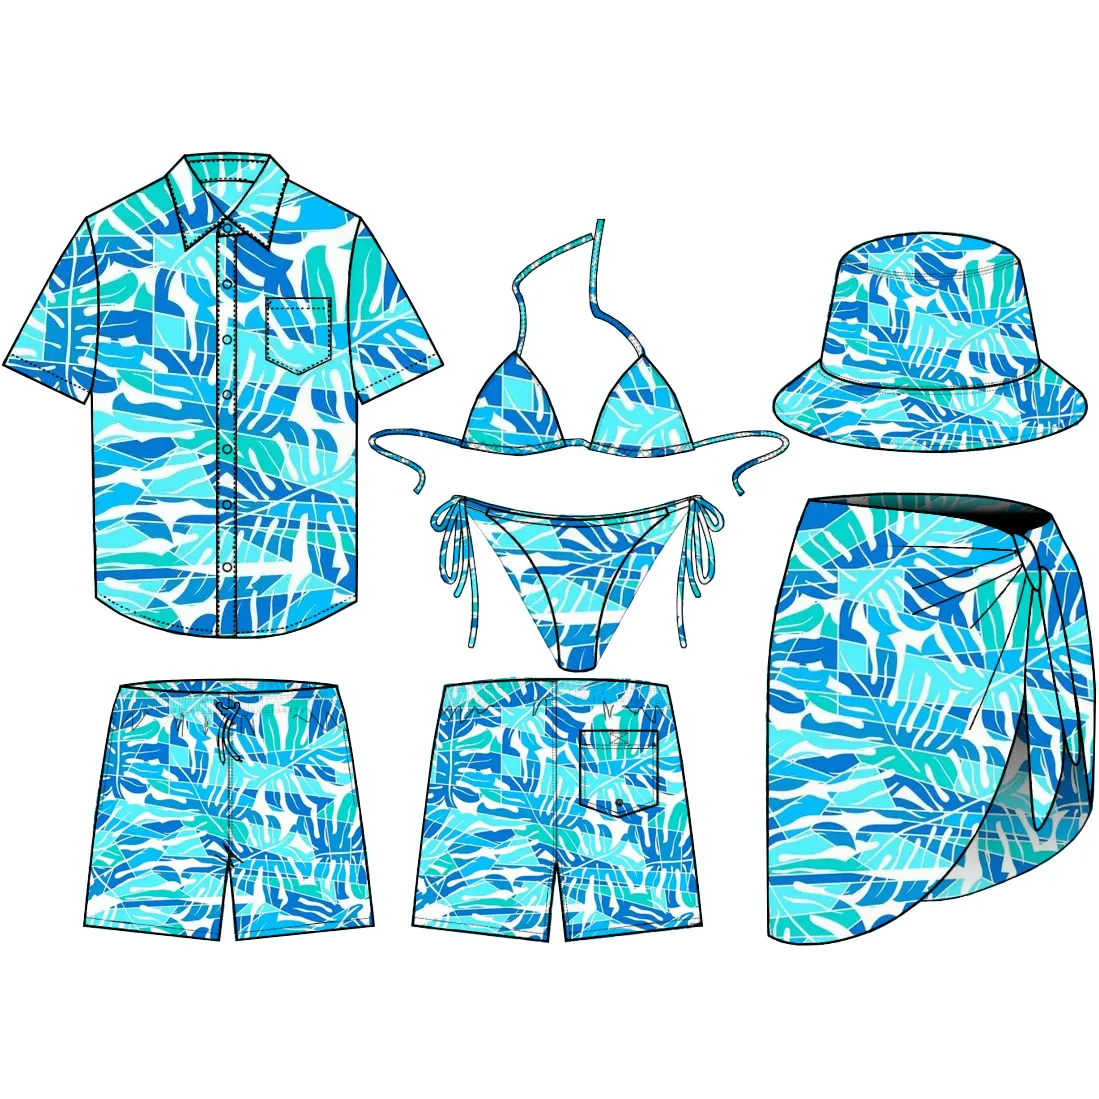 Biquíni de marca própria personalizado para mulheres, roupa de banho sexy para mulheres, shorts, trajes de banho, biquíni com camisas havaianas